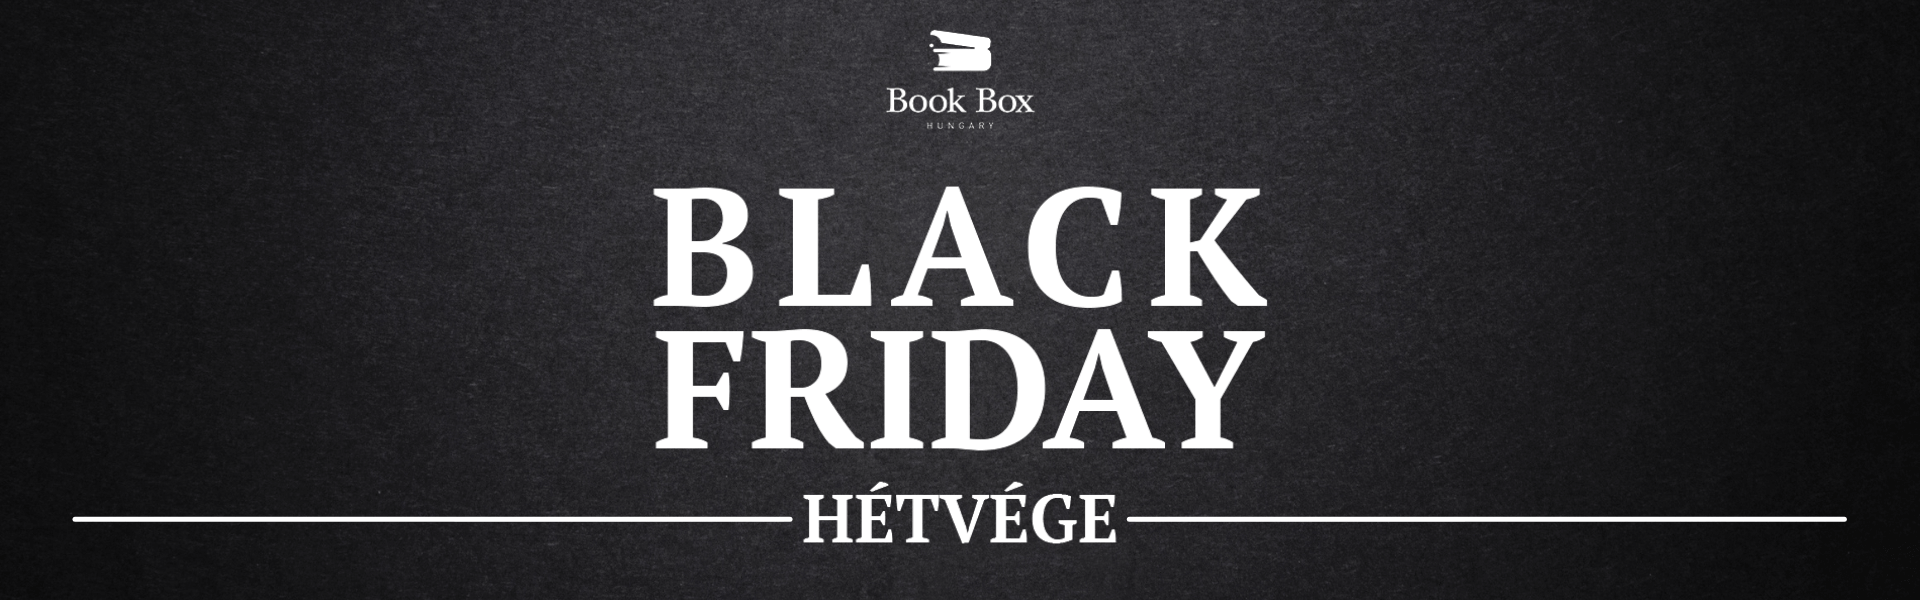 Black Friday könyv hétvége a Book Box Hungary-n